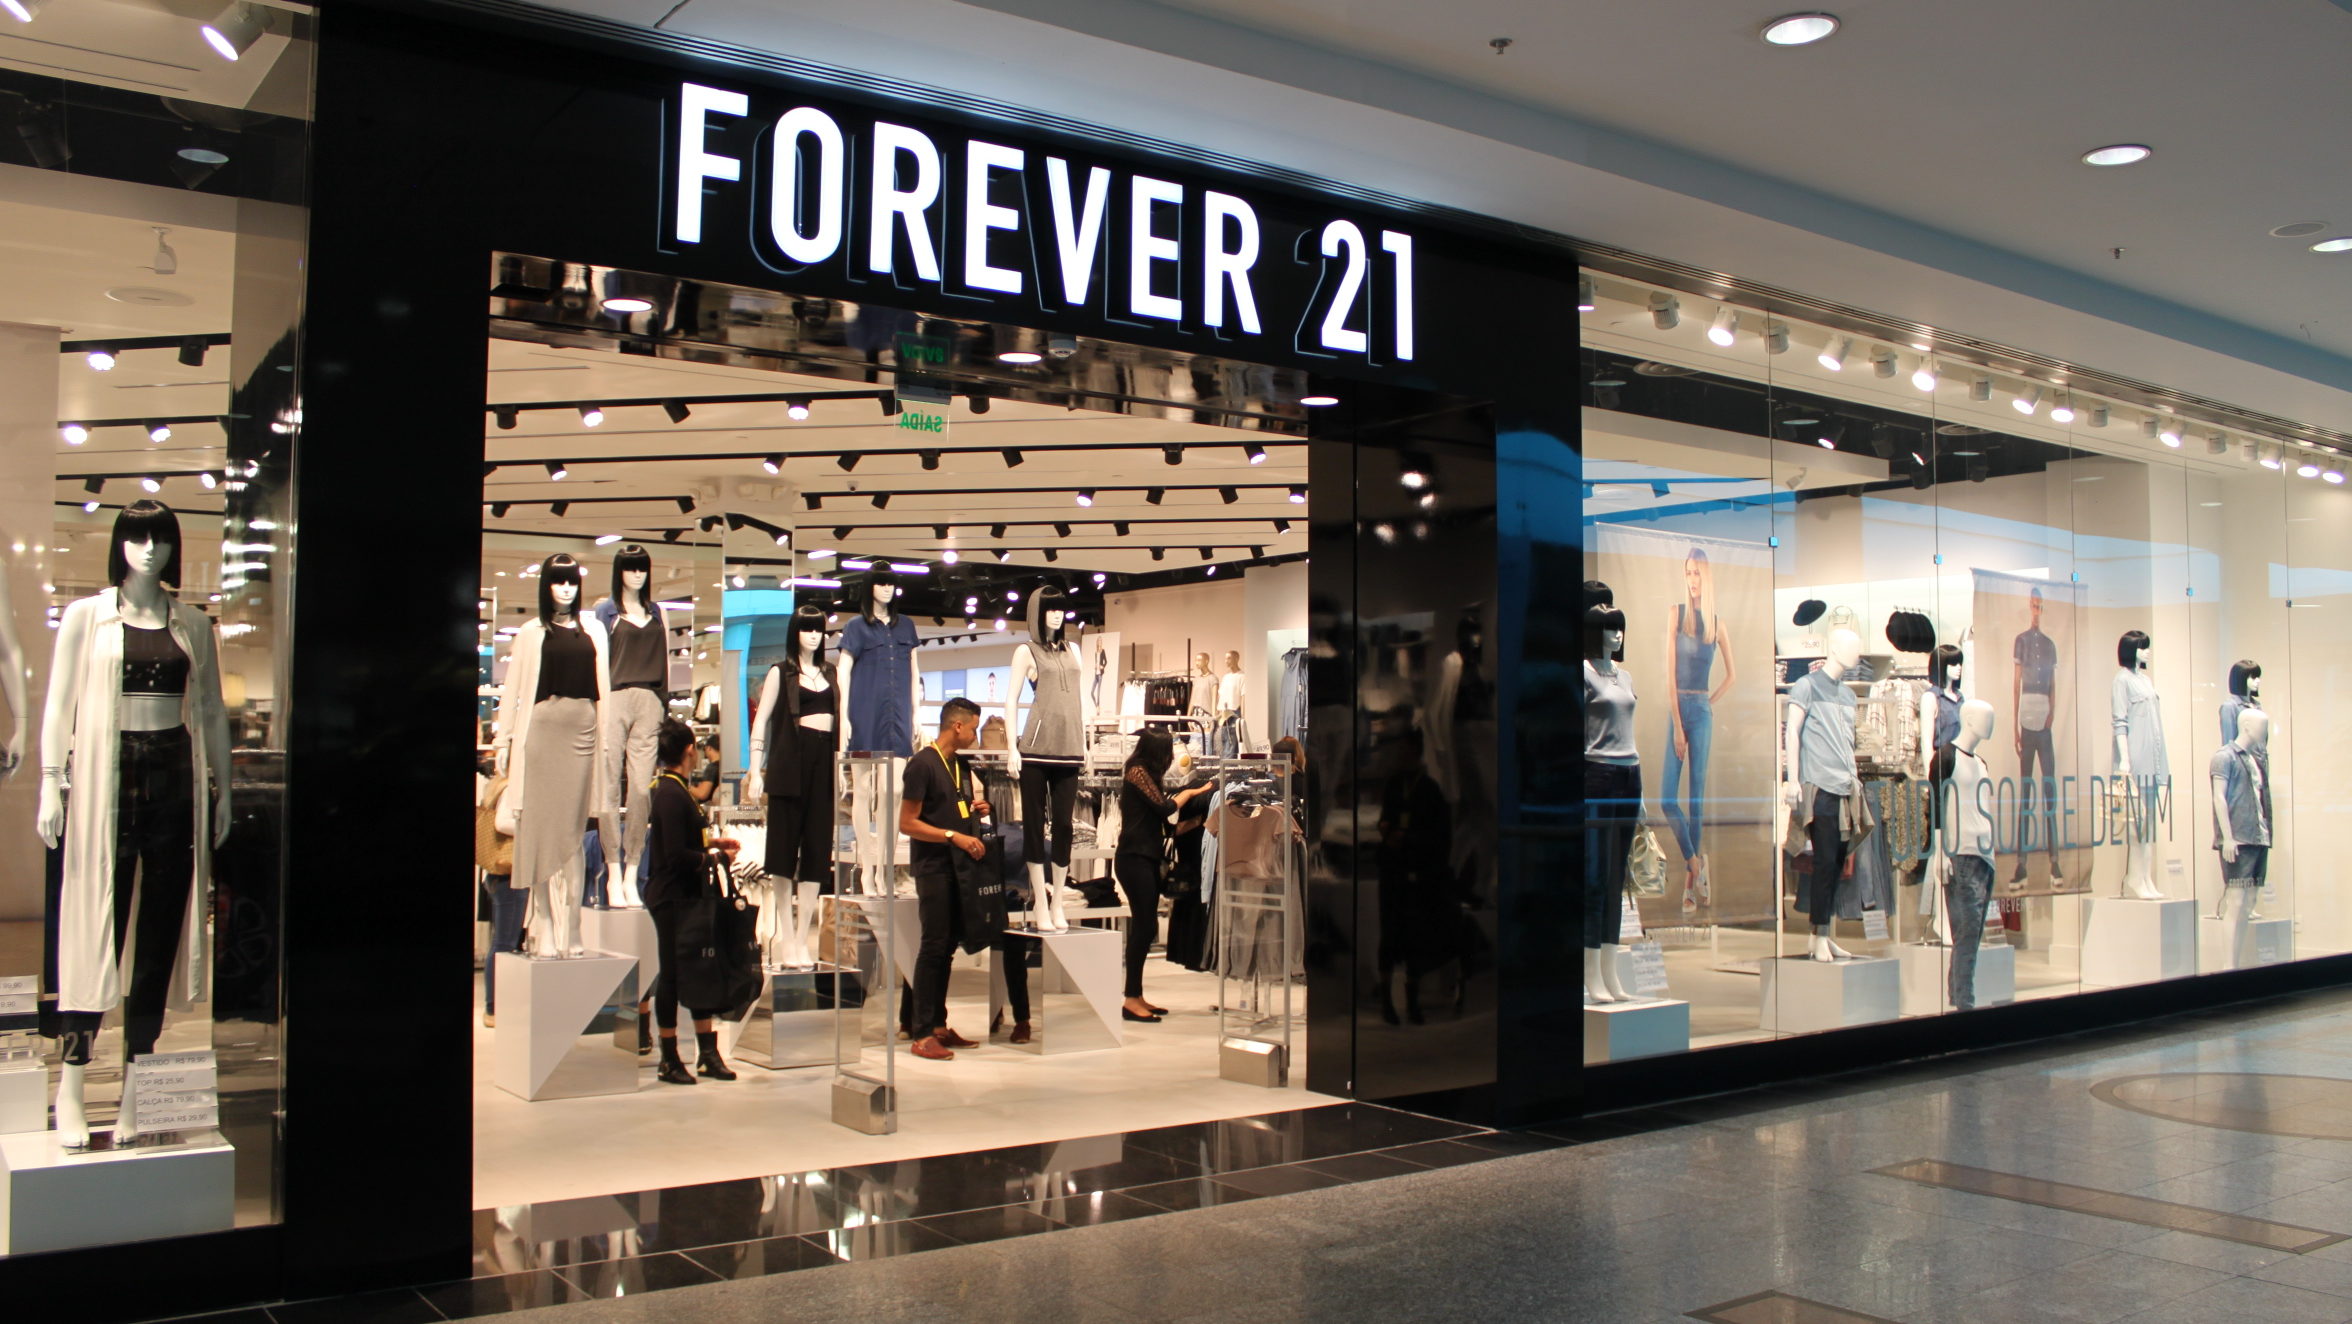 Rede varejista Forever 21 anuncia pedido de recuperação judicial